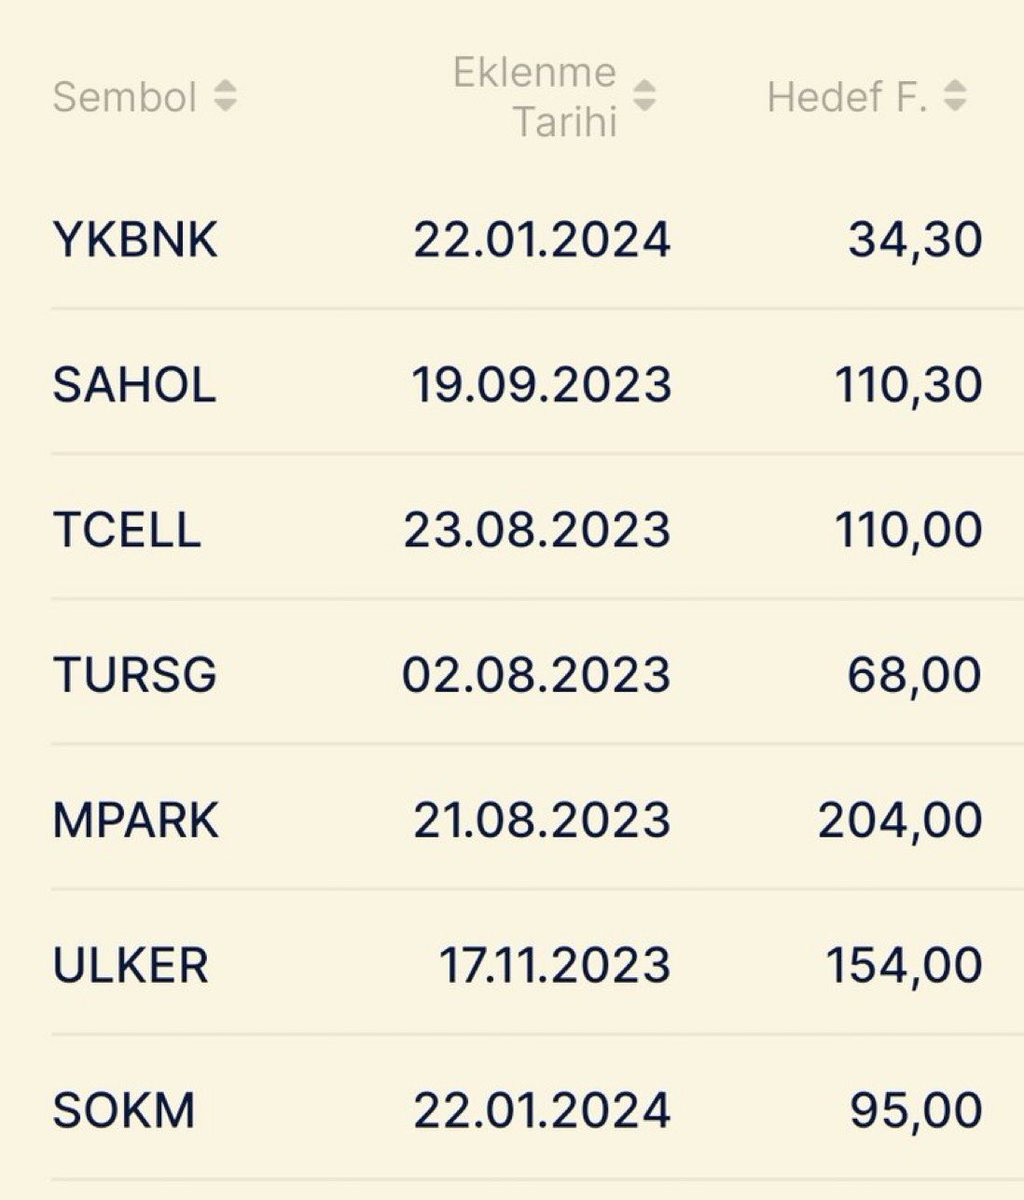 Ünlü & Co Model Portföyü 

#YKBNK 34,30 TL 

#SAHOL 110,30 TL

#TCELL 110,0 TL

#TURSG 68,0 TL 

#MPARK 204,0 TL 

#ULKER 154,0 TL

#SOKM 95,00 TL